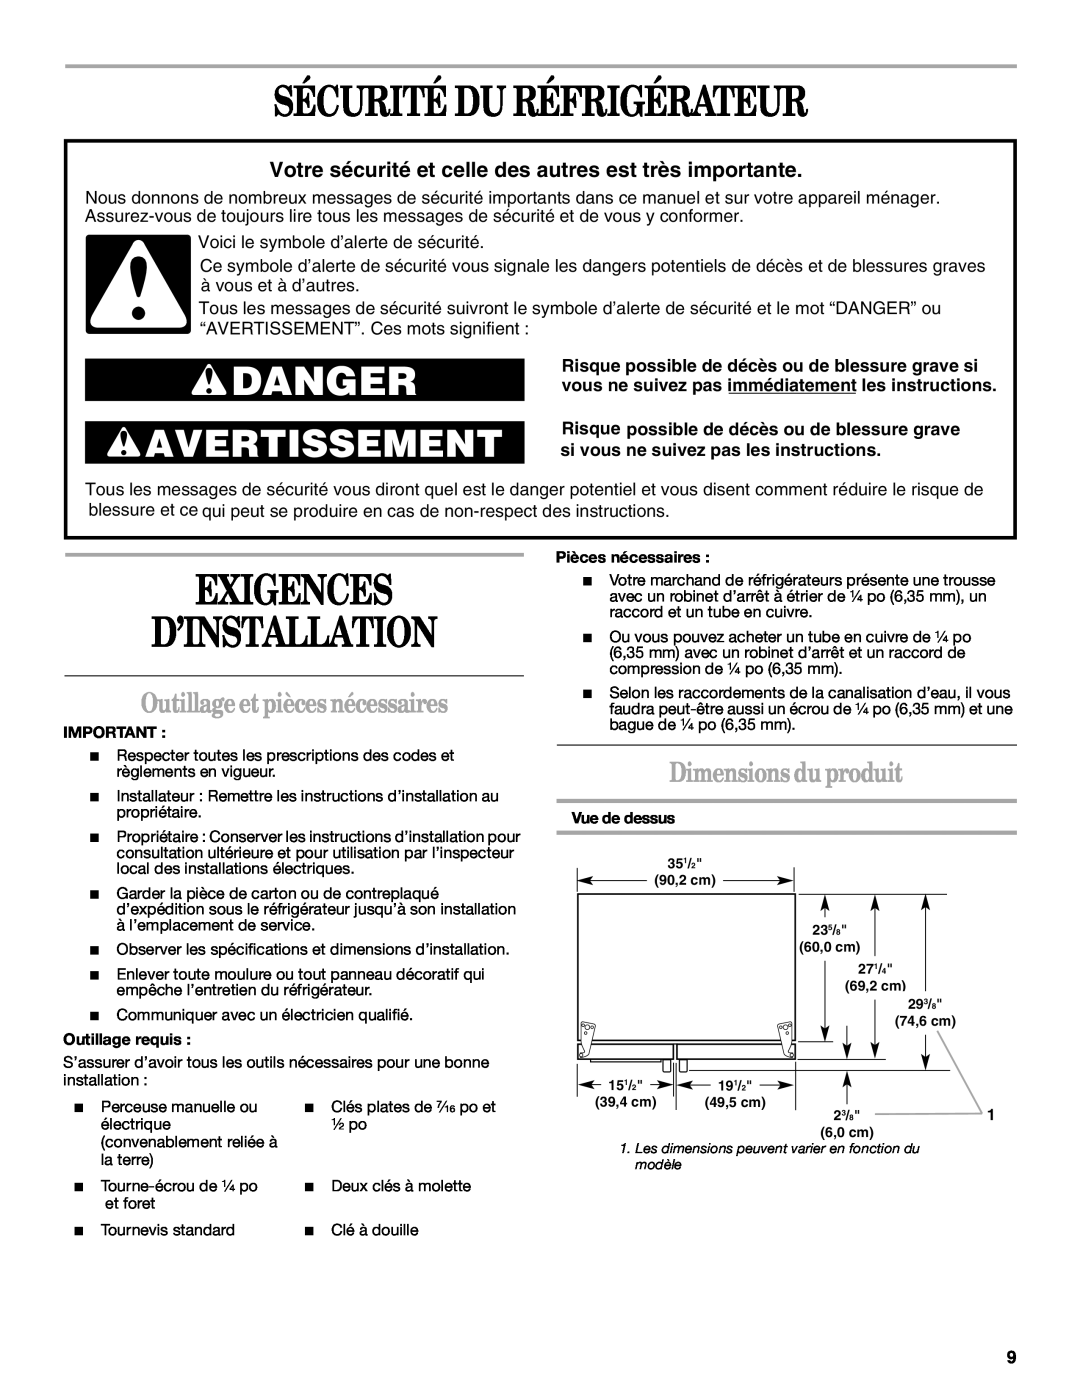 Whirlpool 2221515 Sécurité Du Réfrigérateur, Exigences D’Installation, Outillage et pièces nécessaires, Danger 